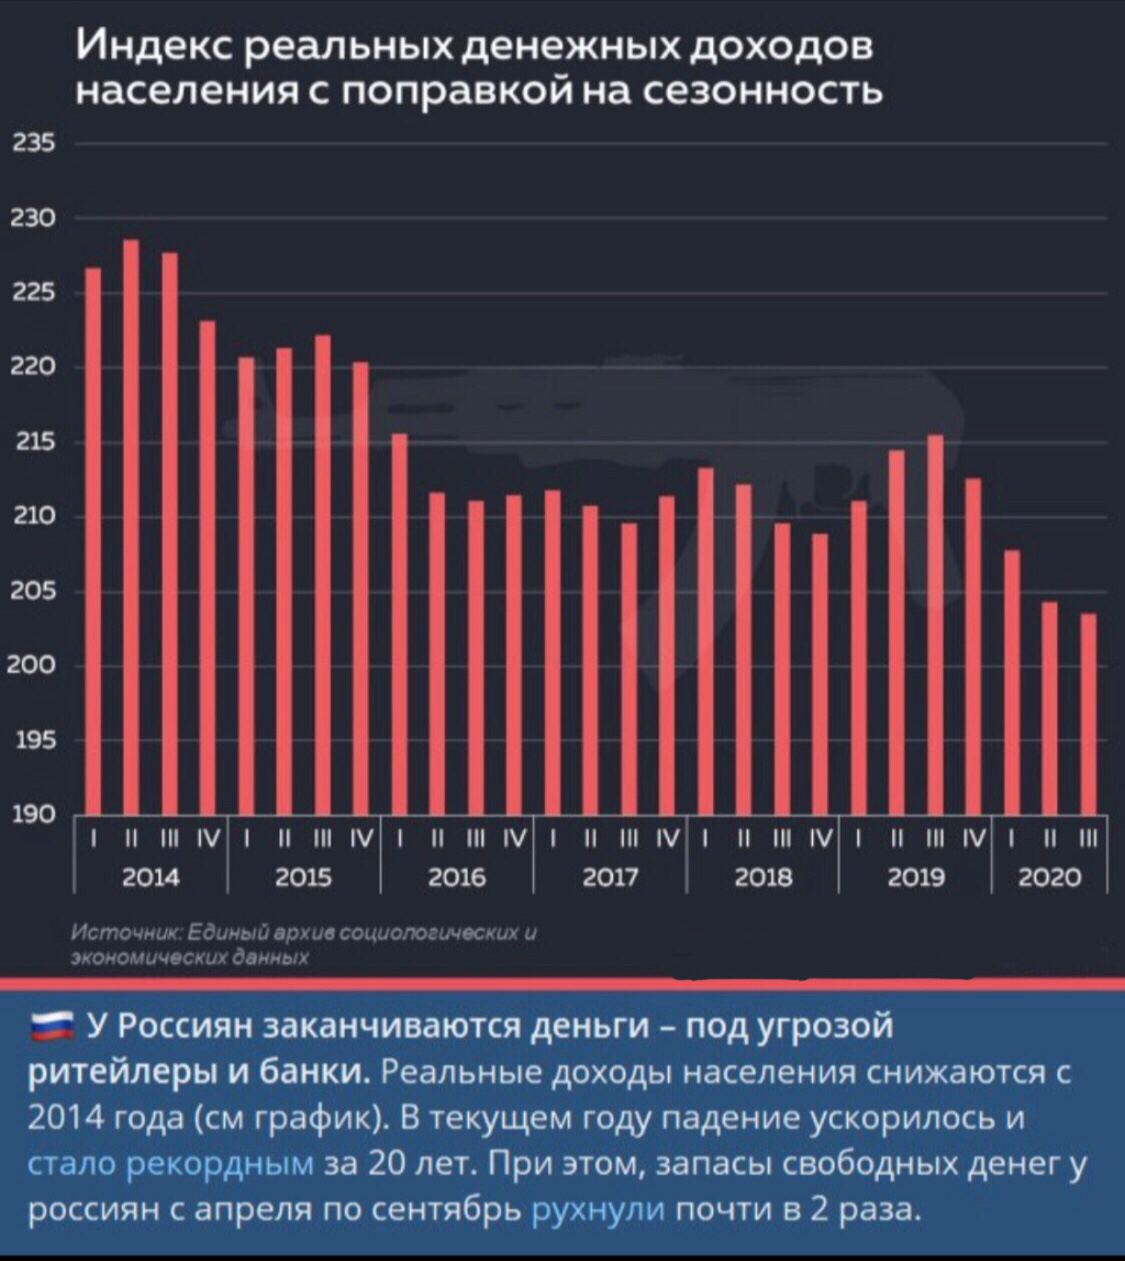 Динамика доходов населения России на 2020 год